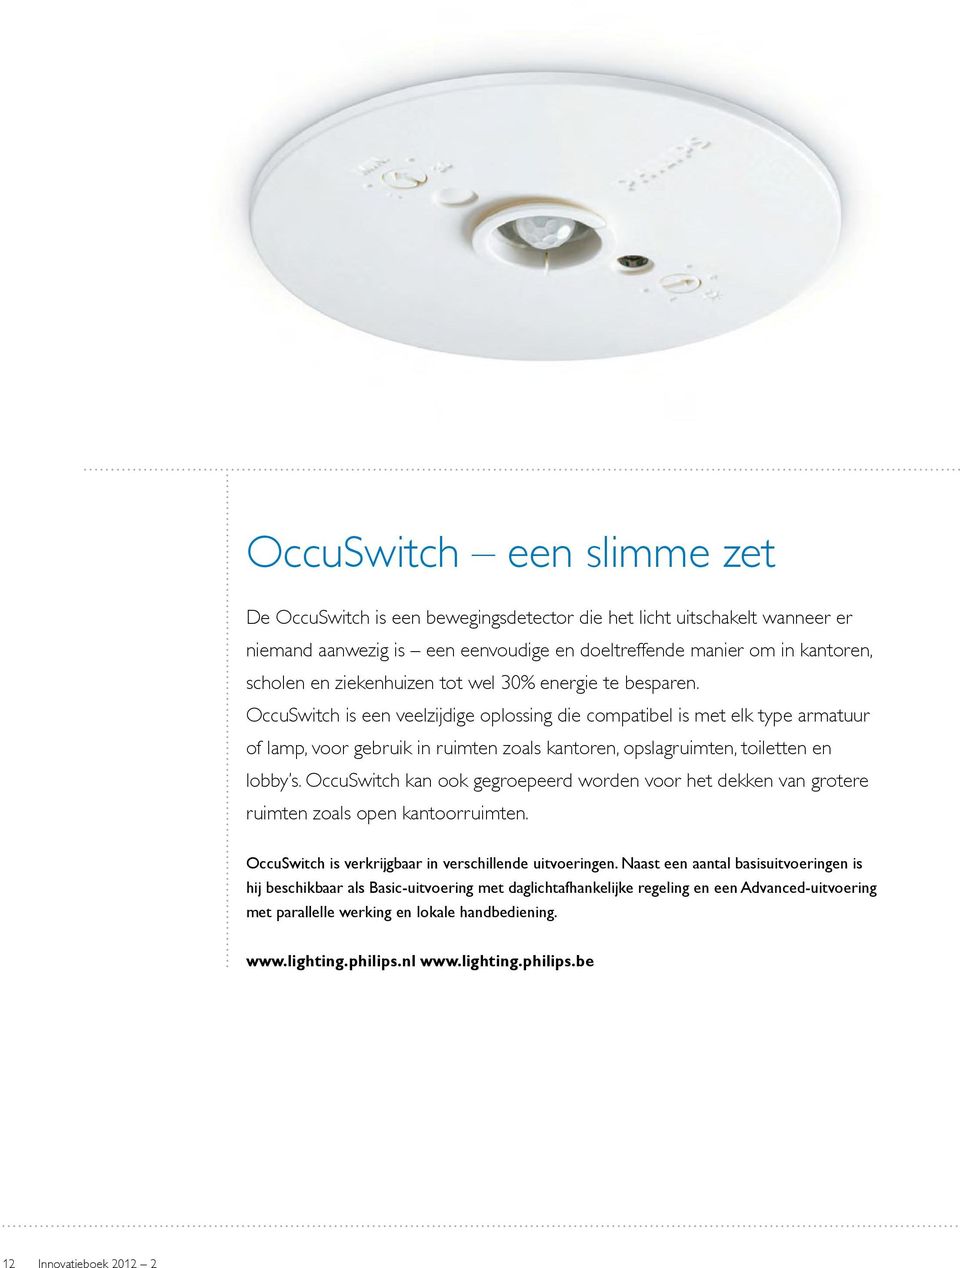 OccuSwitch is een veelzijdige oplossing die compatibel is met elk type armatuur of lamp, voor gebruik in ruimten zoals kantoren, opslagruimten, toiletten en lobby s.